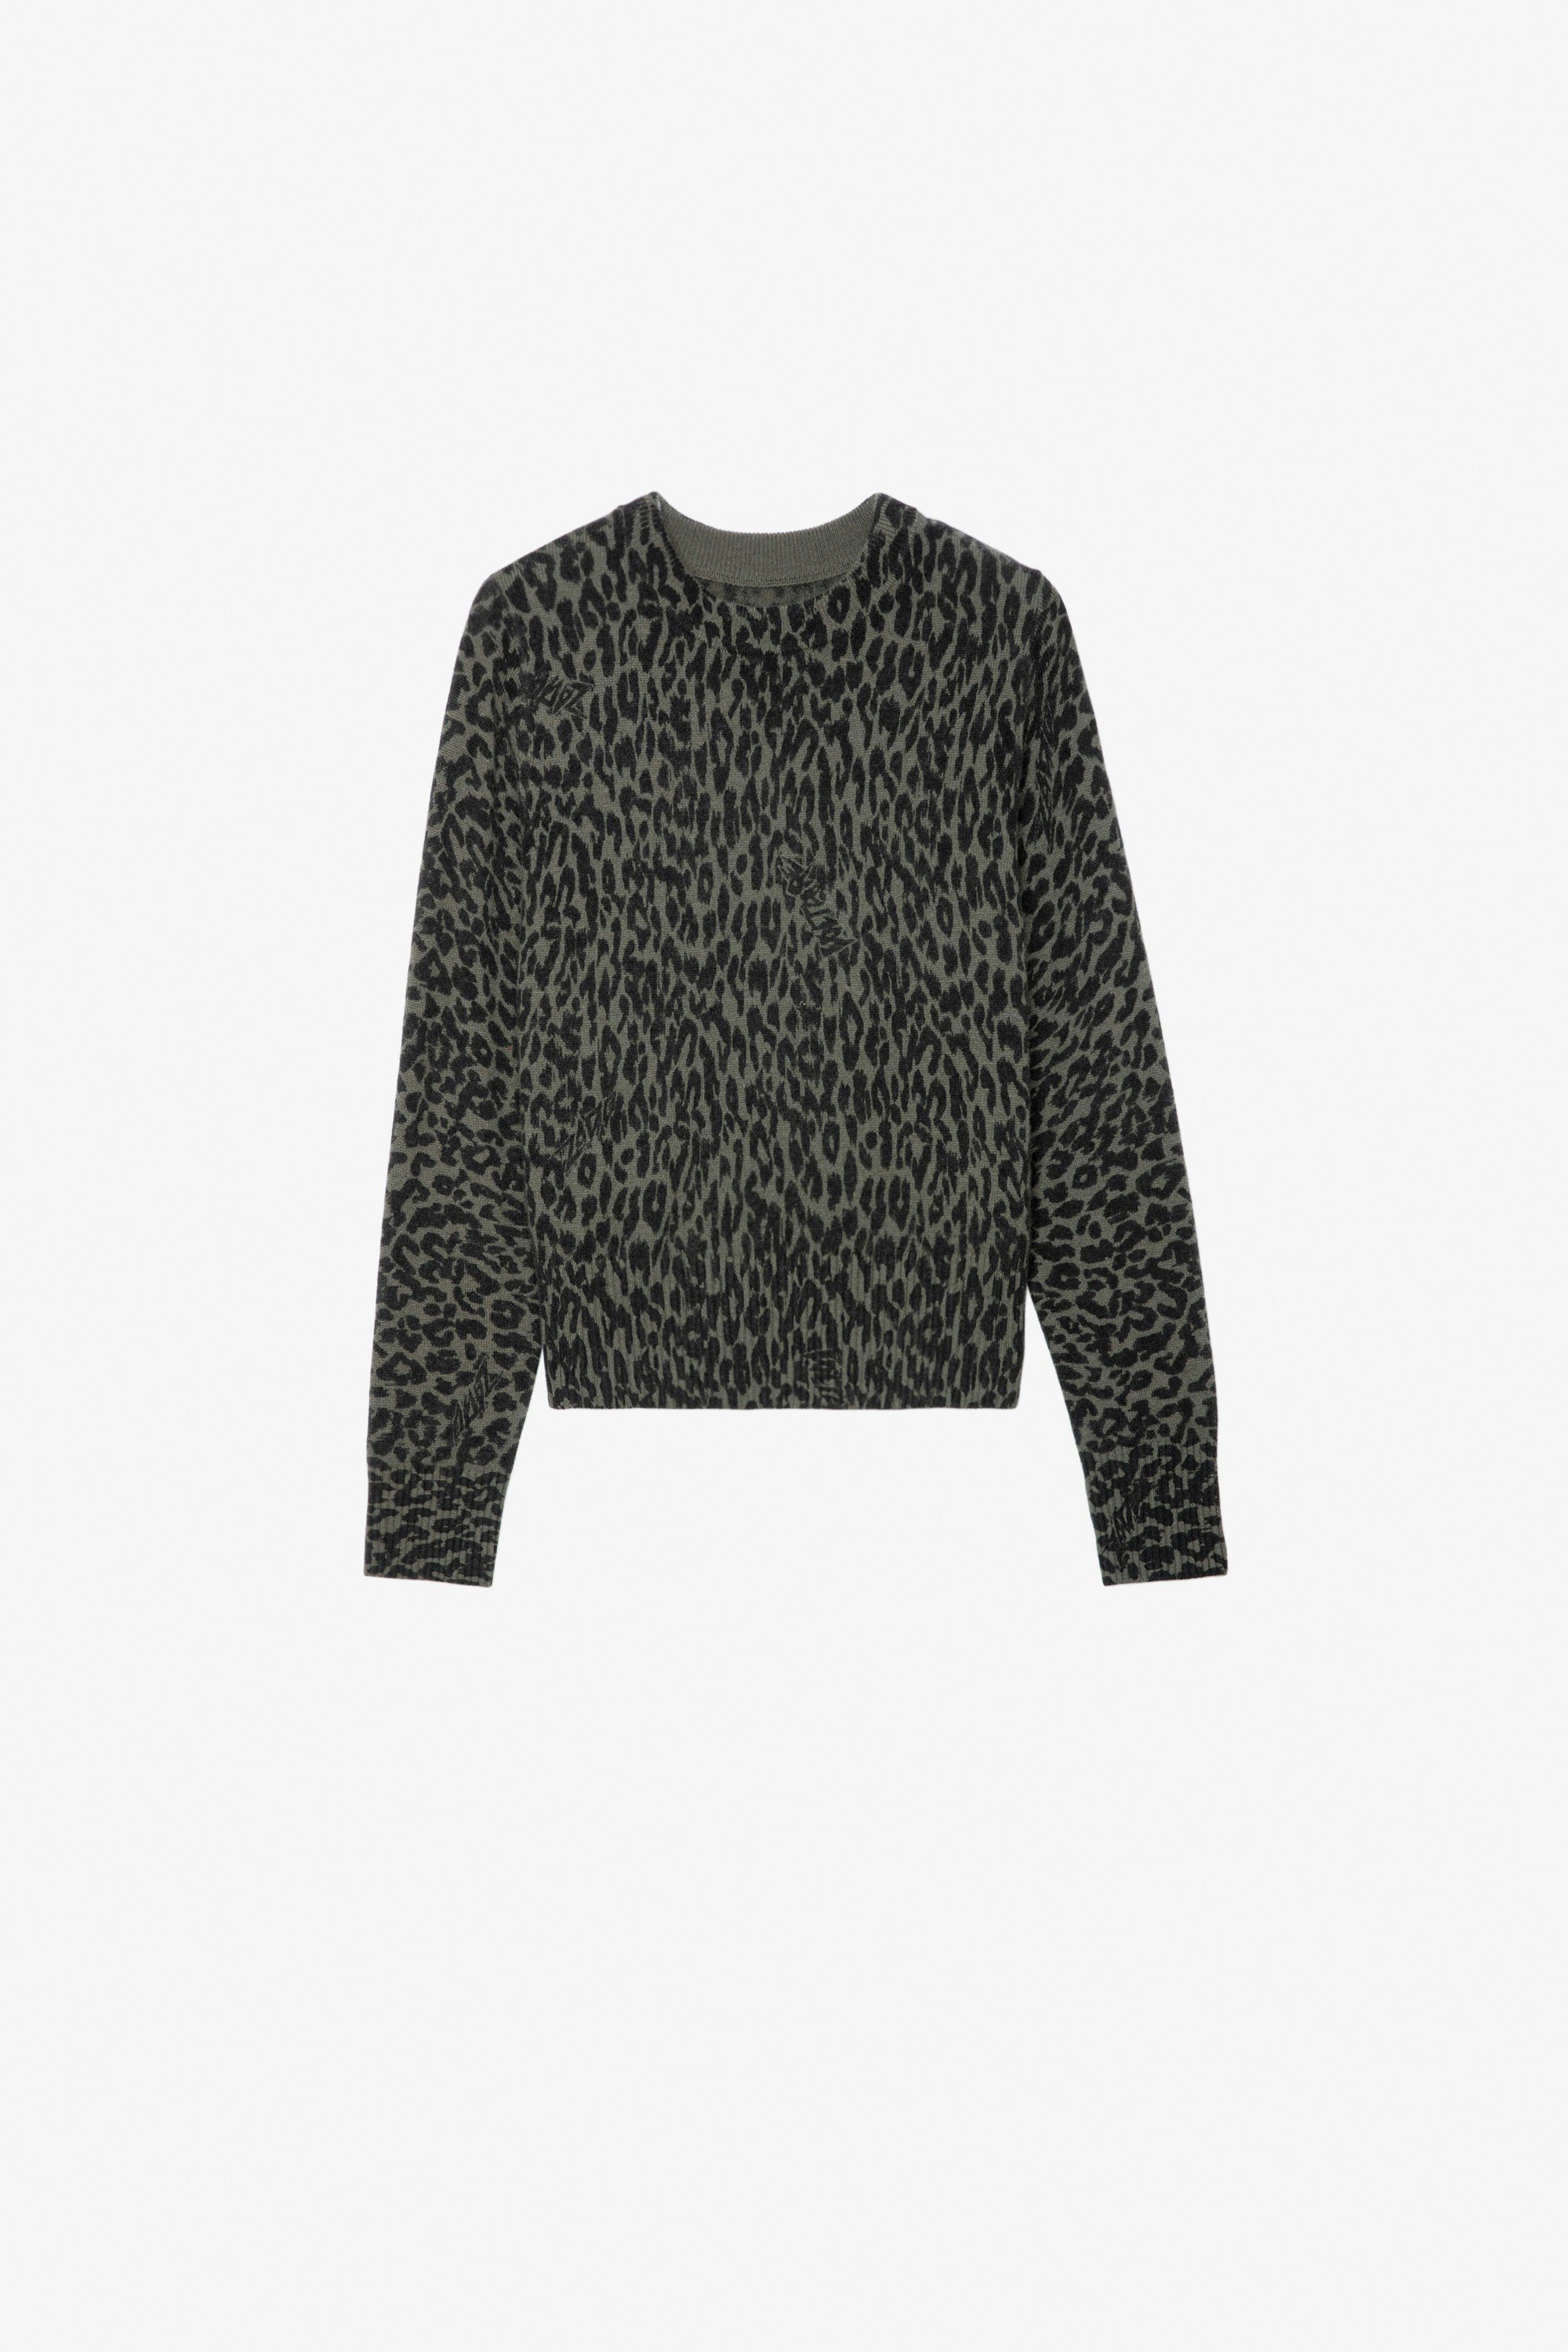 Reglis Girls’ Jumper - Girls’ khaki leopard-print knit jumper.